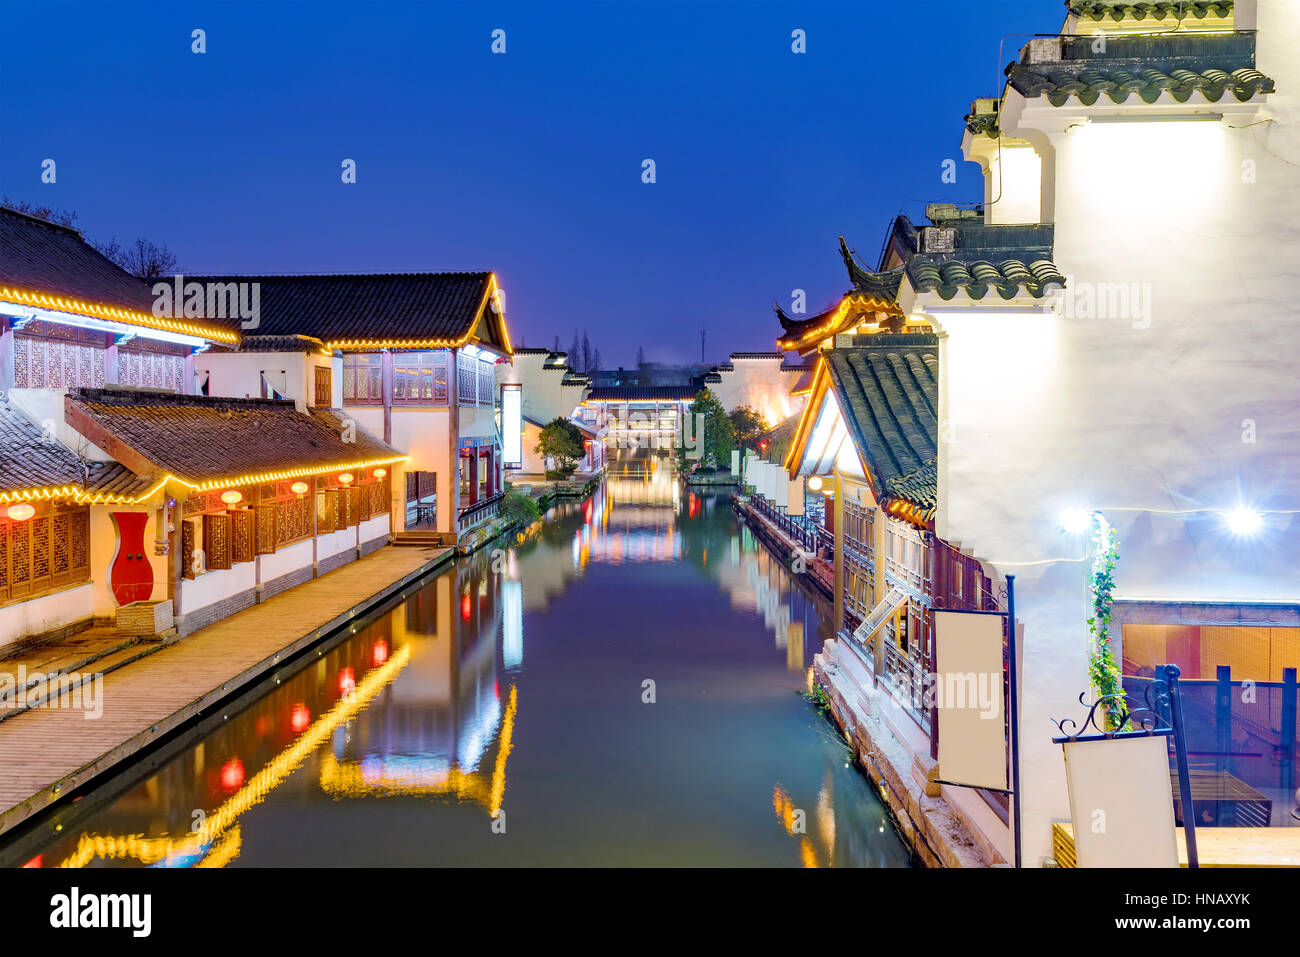 L'architecture traditionnelle chinoise sur une rivière de nuit à Nanjing Banque D'Images